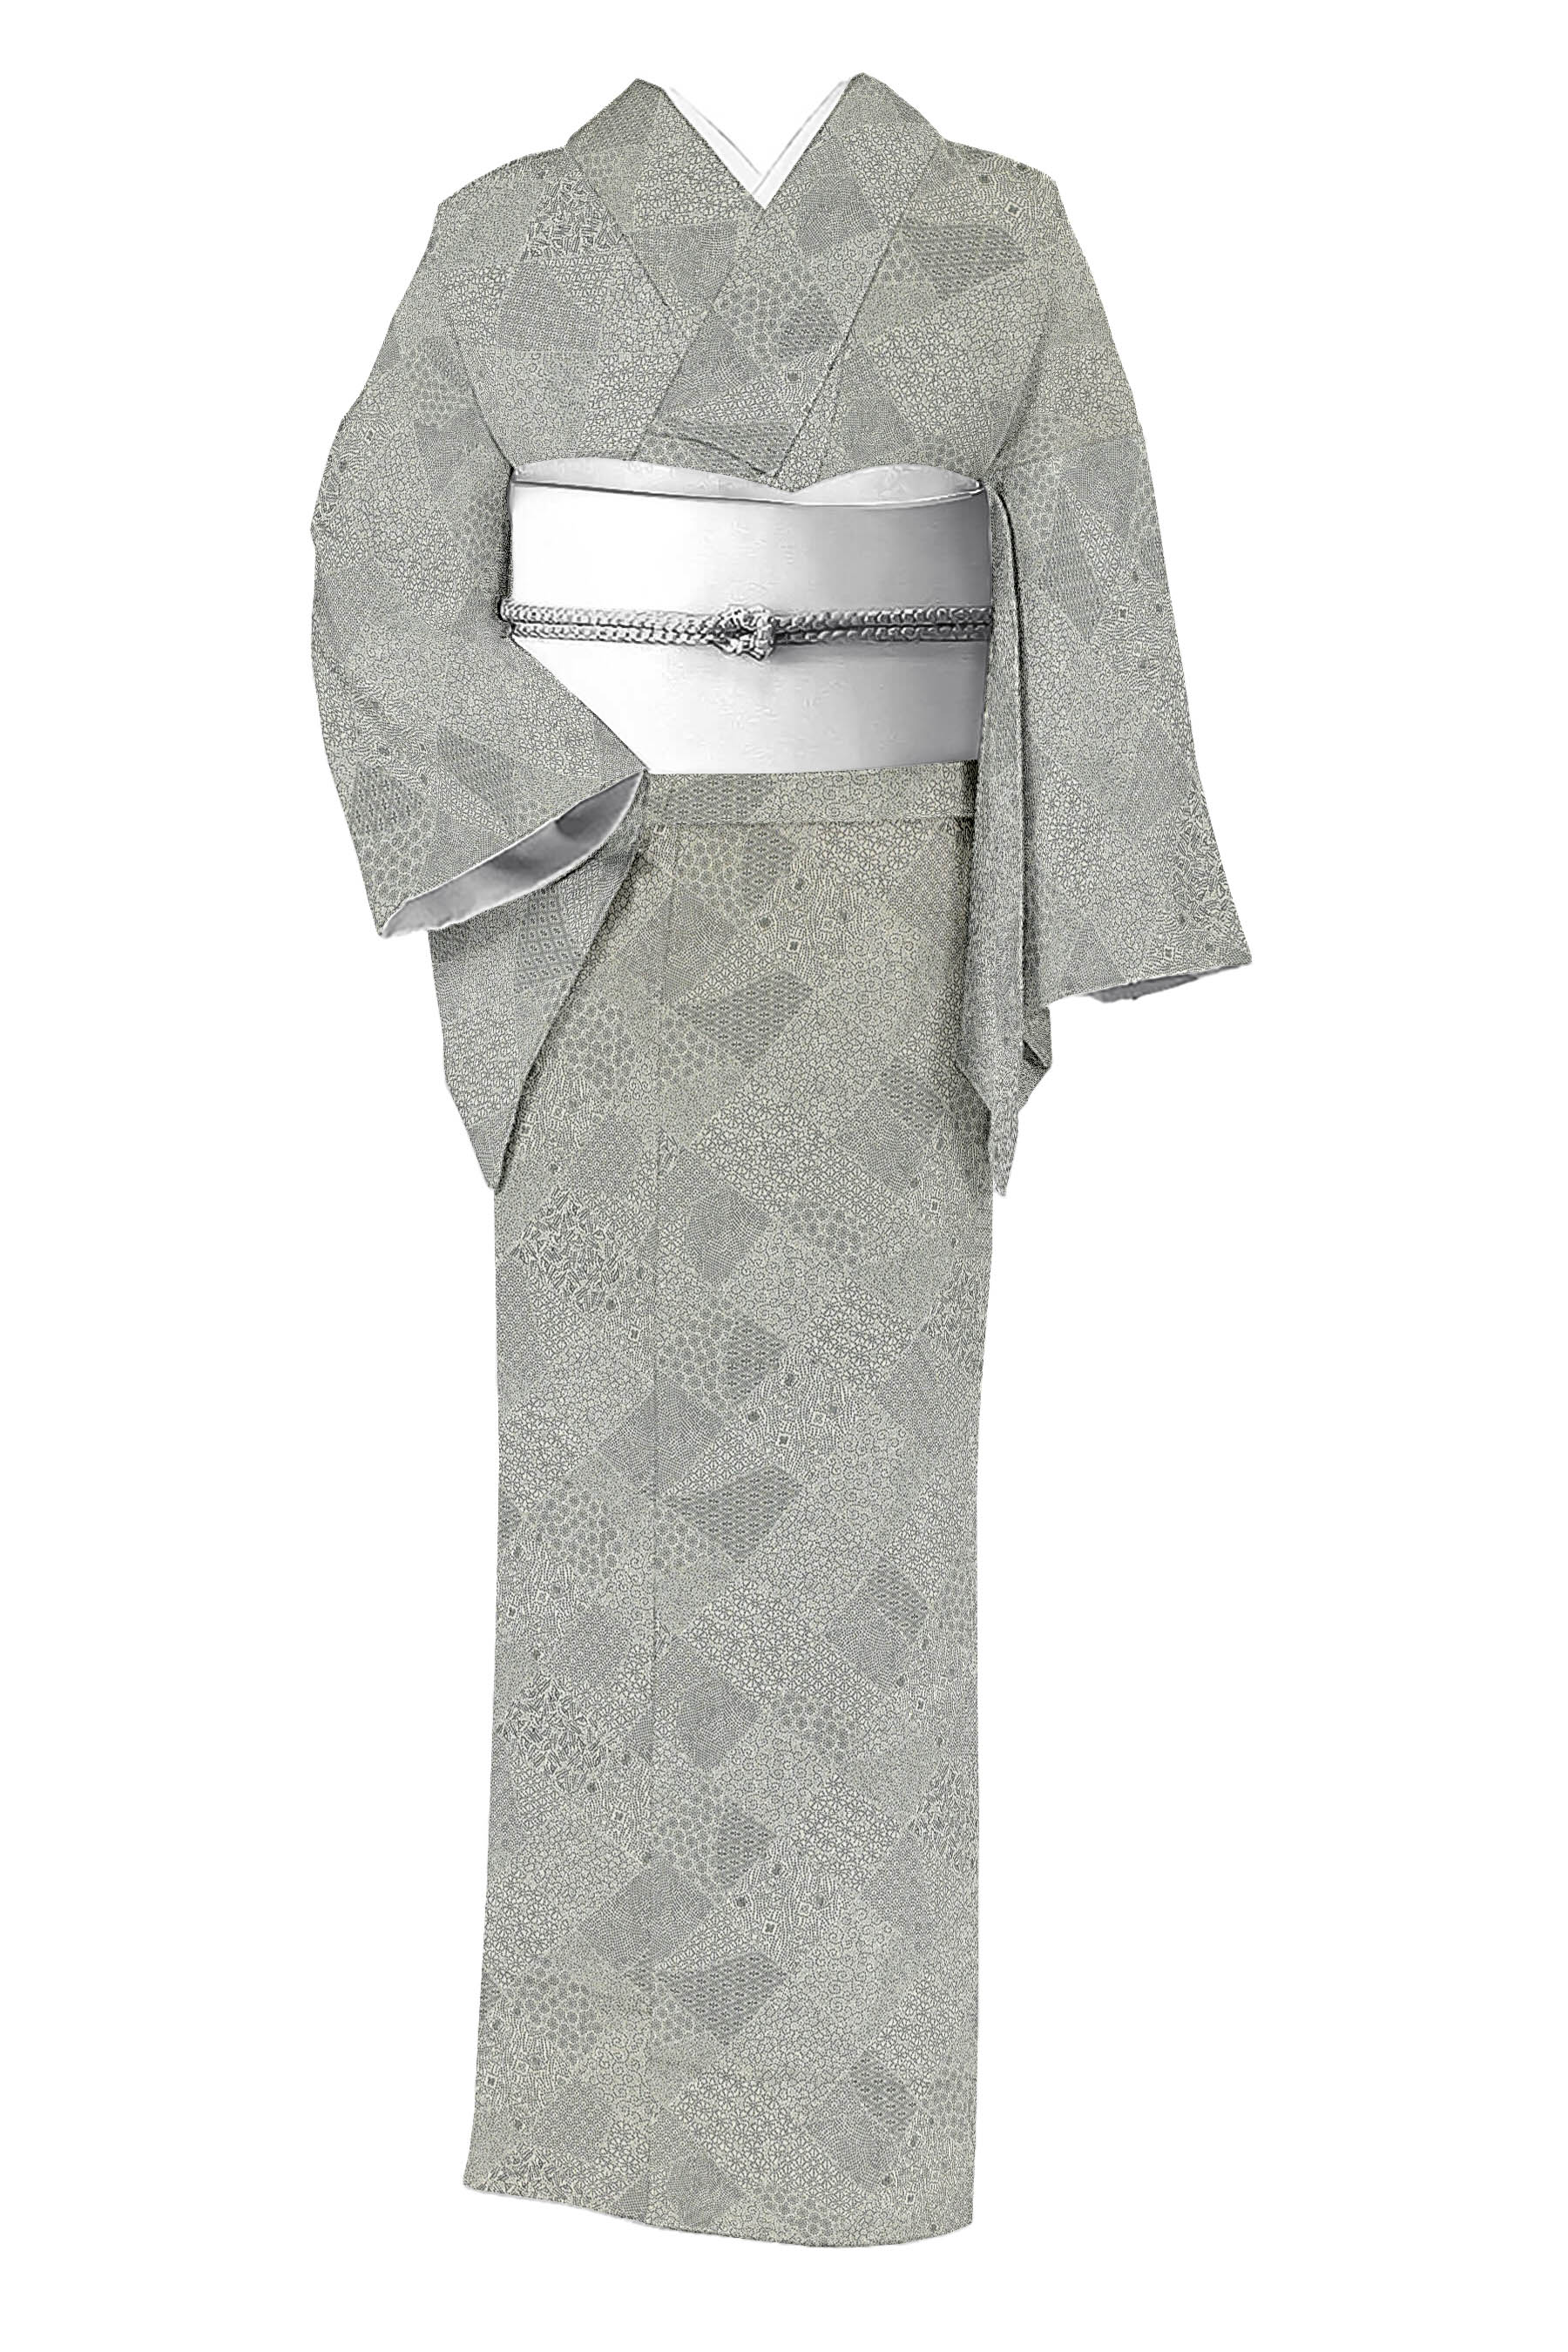 長襦袢 アンティーク 袷 正絹 Sサイズ 色襦袢 古布 着物 レトロ